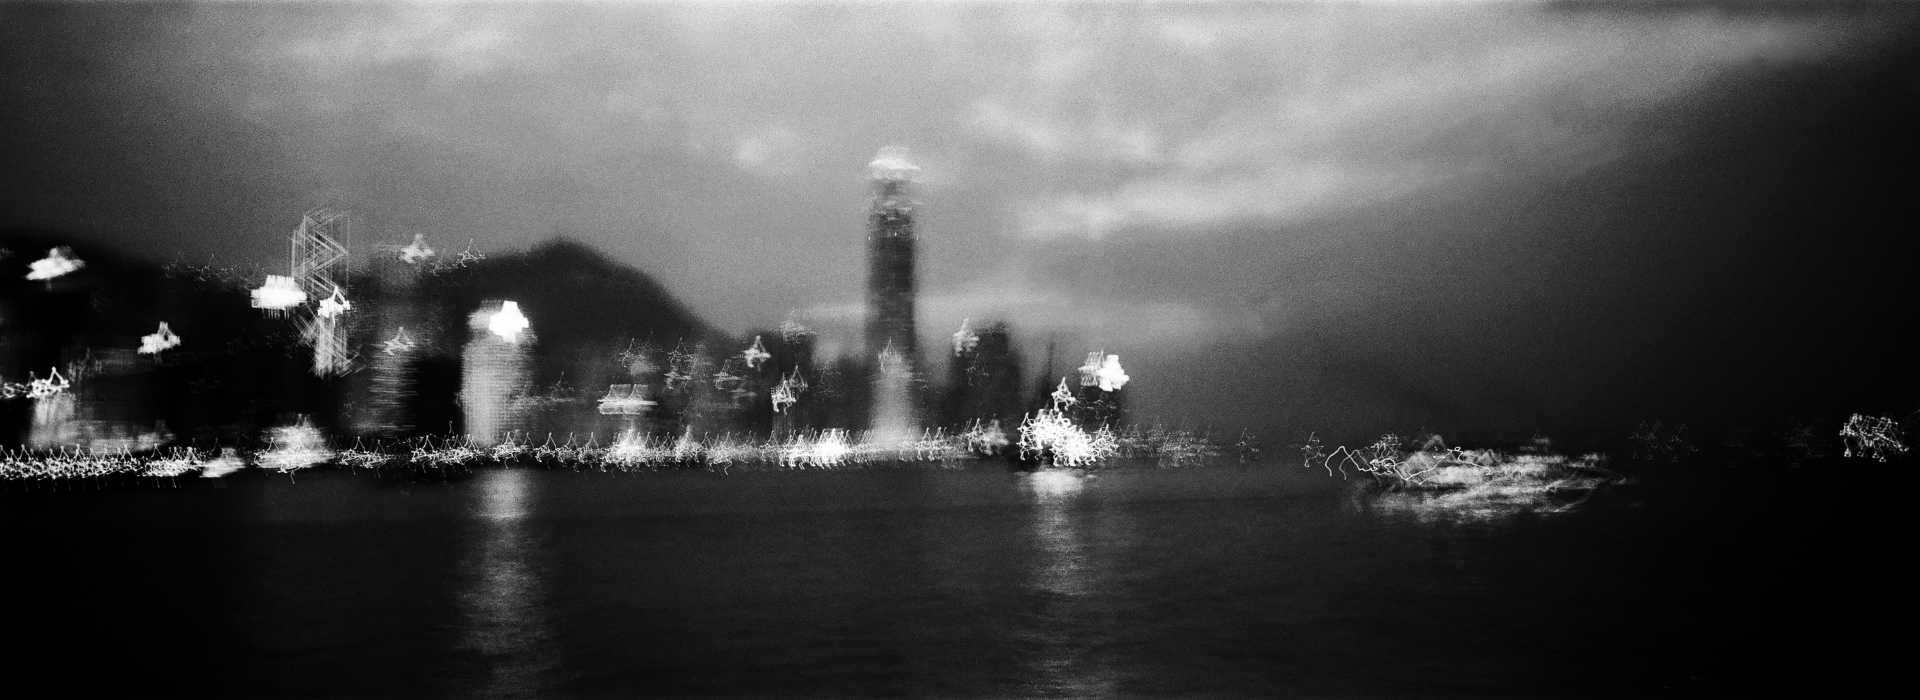  Victoria Harbour at night. Hong Kong 2015. 